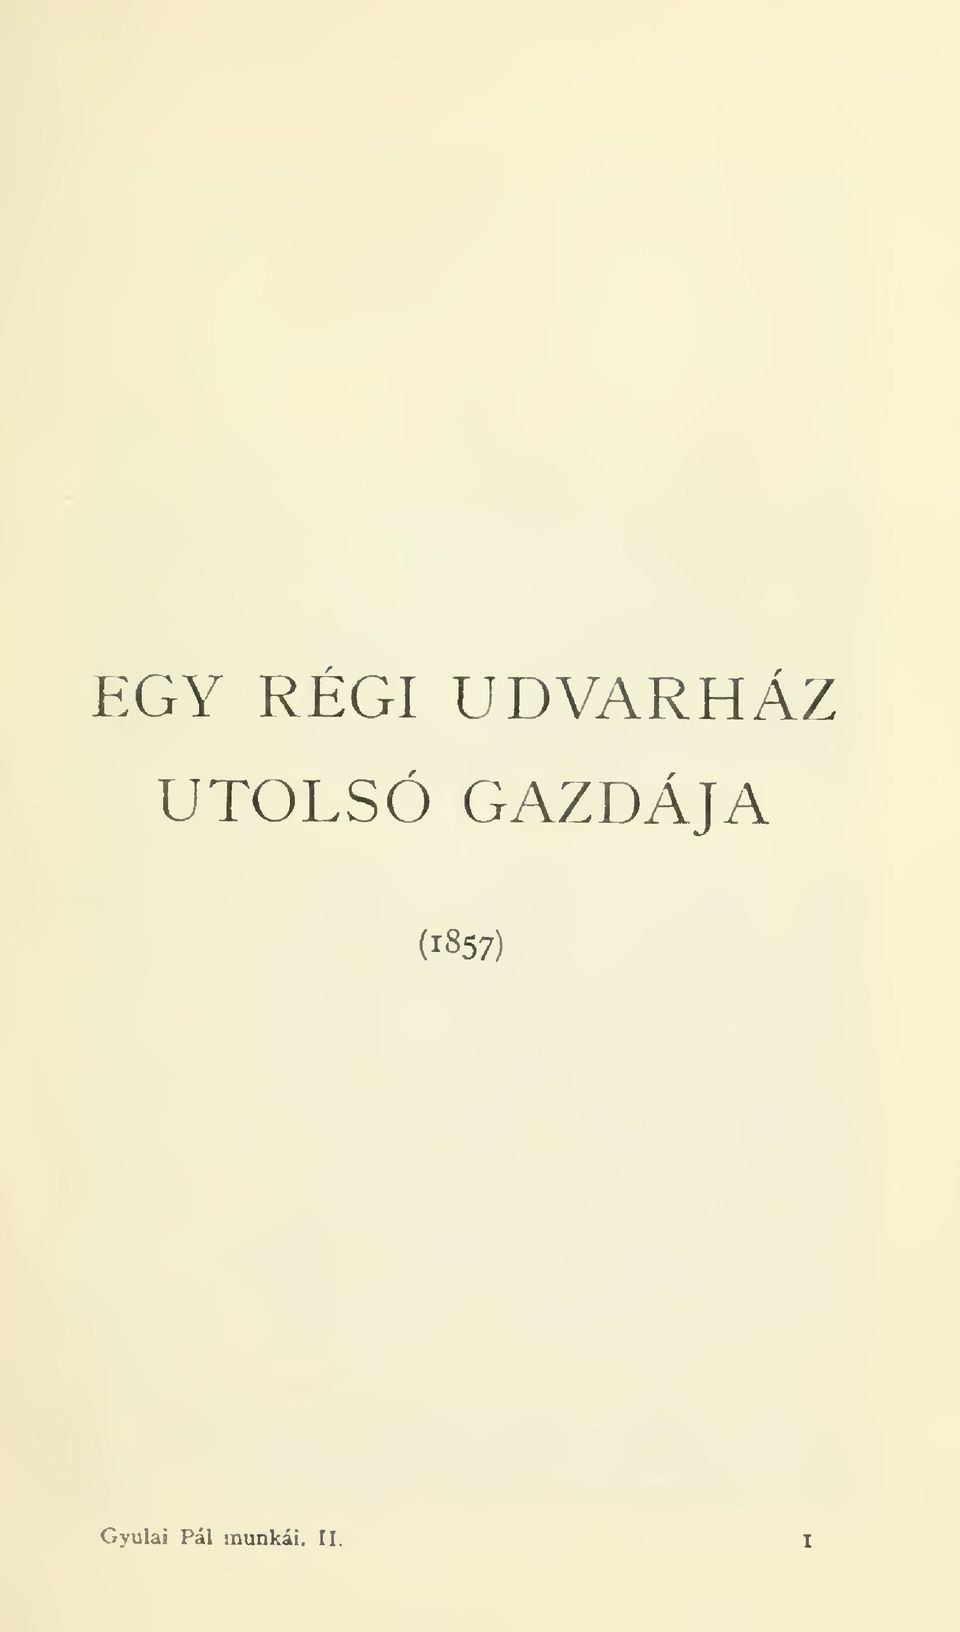 GAZDÁJA (1857)